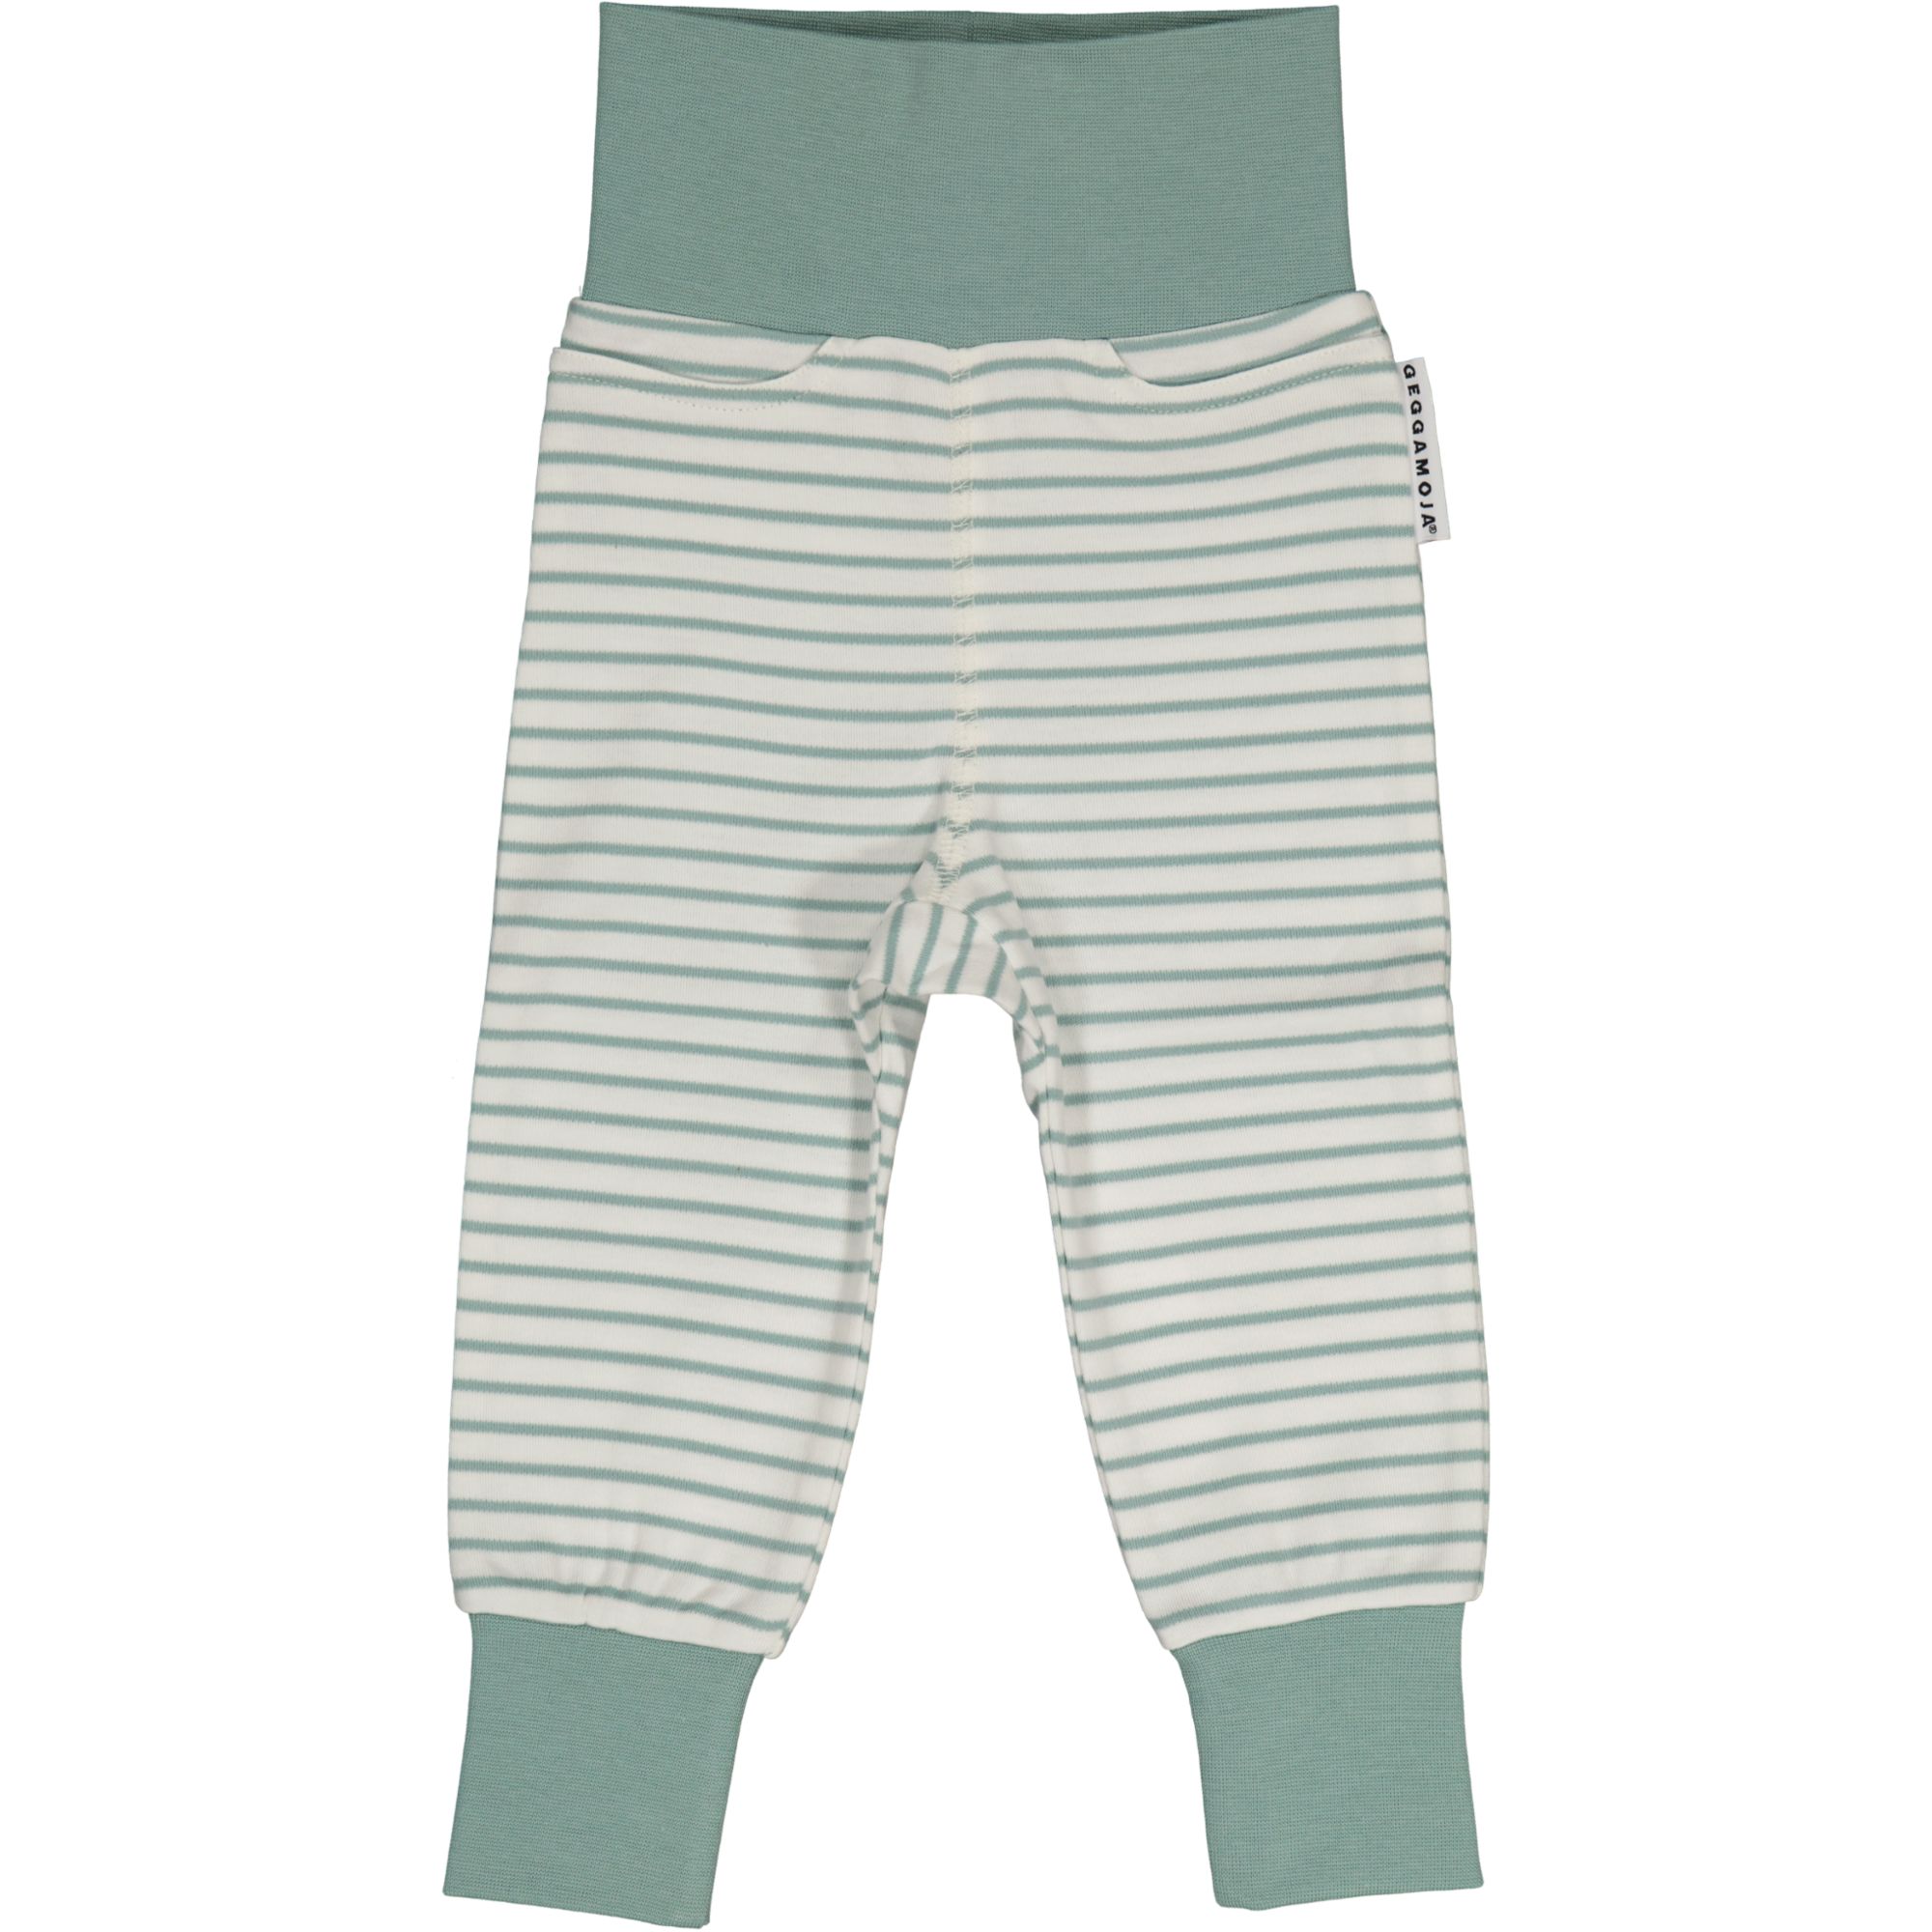 Vauvan housut L.vihreä/offvalkoinen